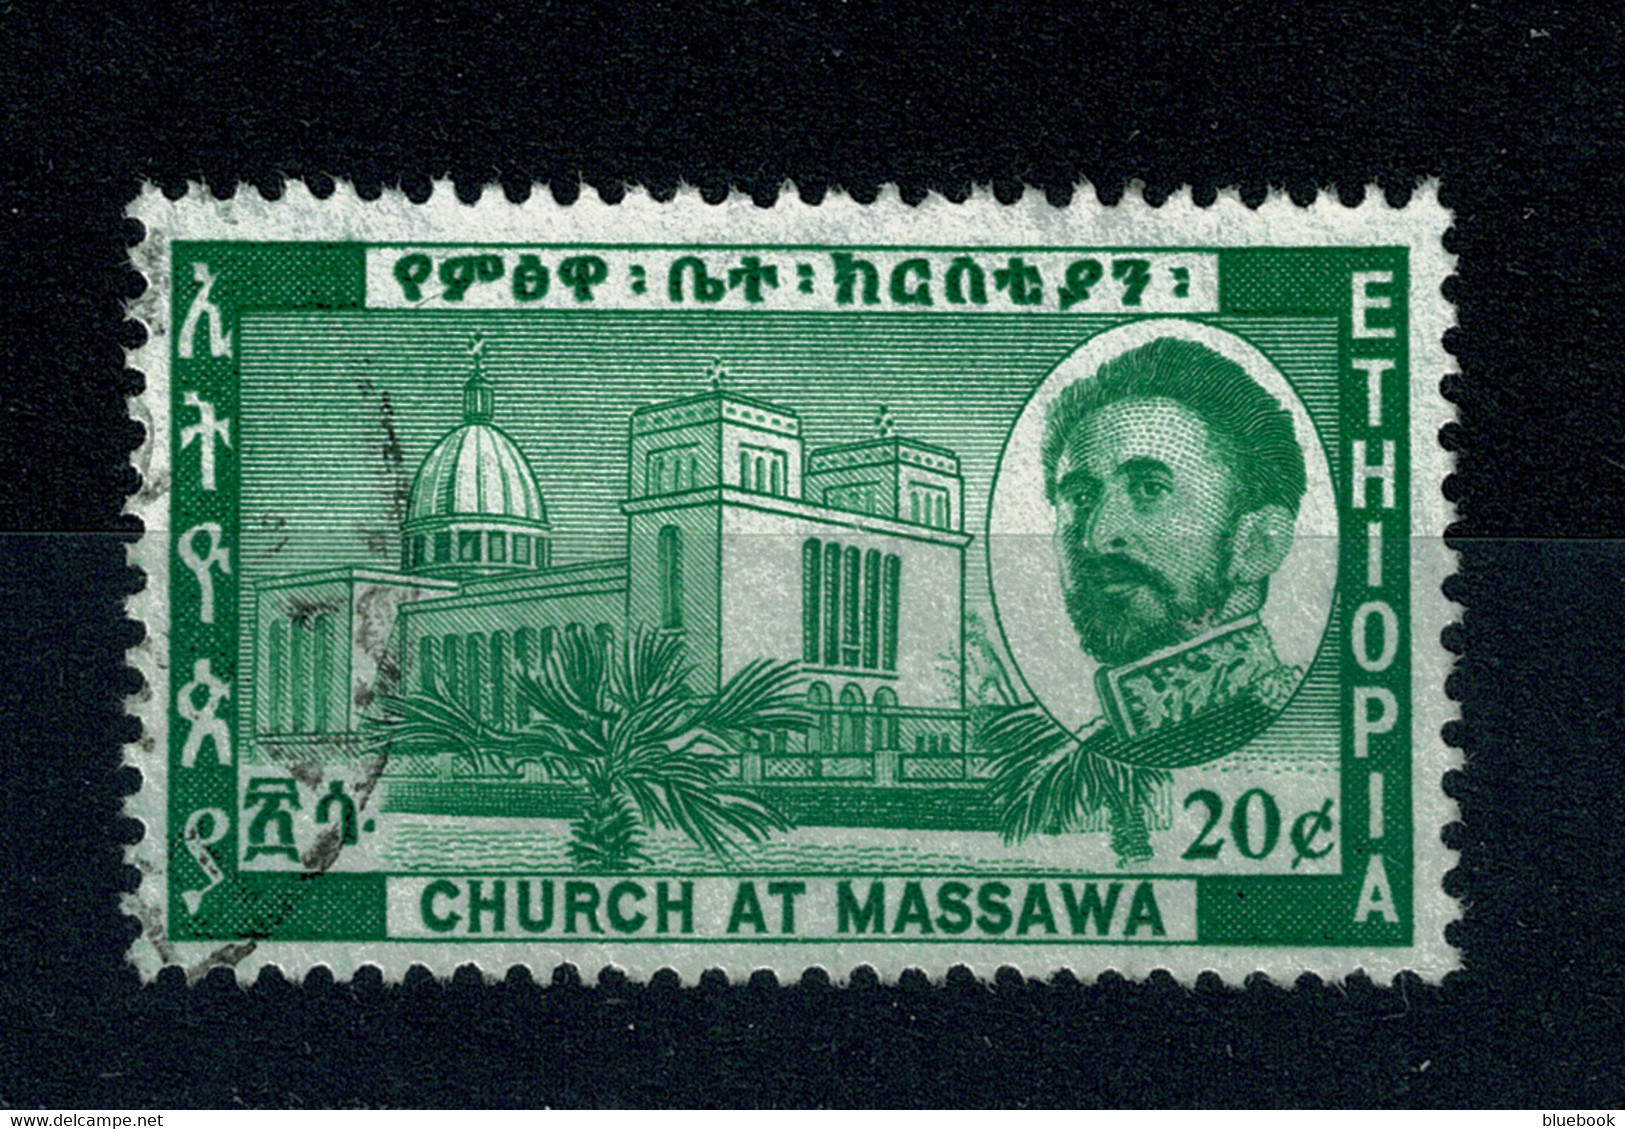 Ref 1459 - Ethiopia 1962 - 20c Used Stamp - SG 549 - Ethiopie